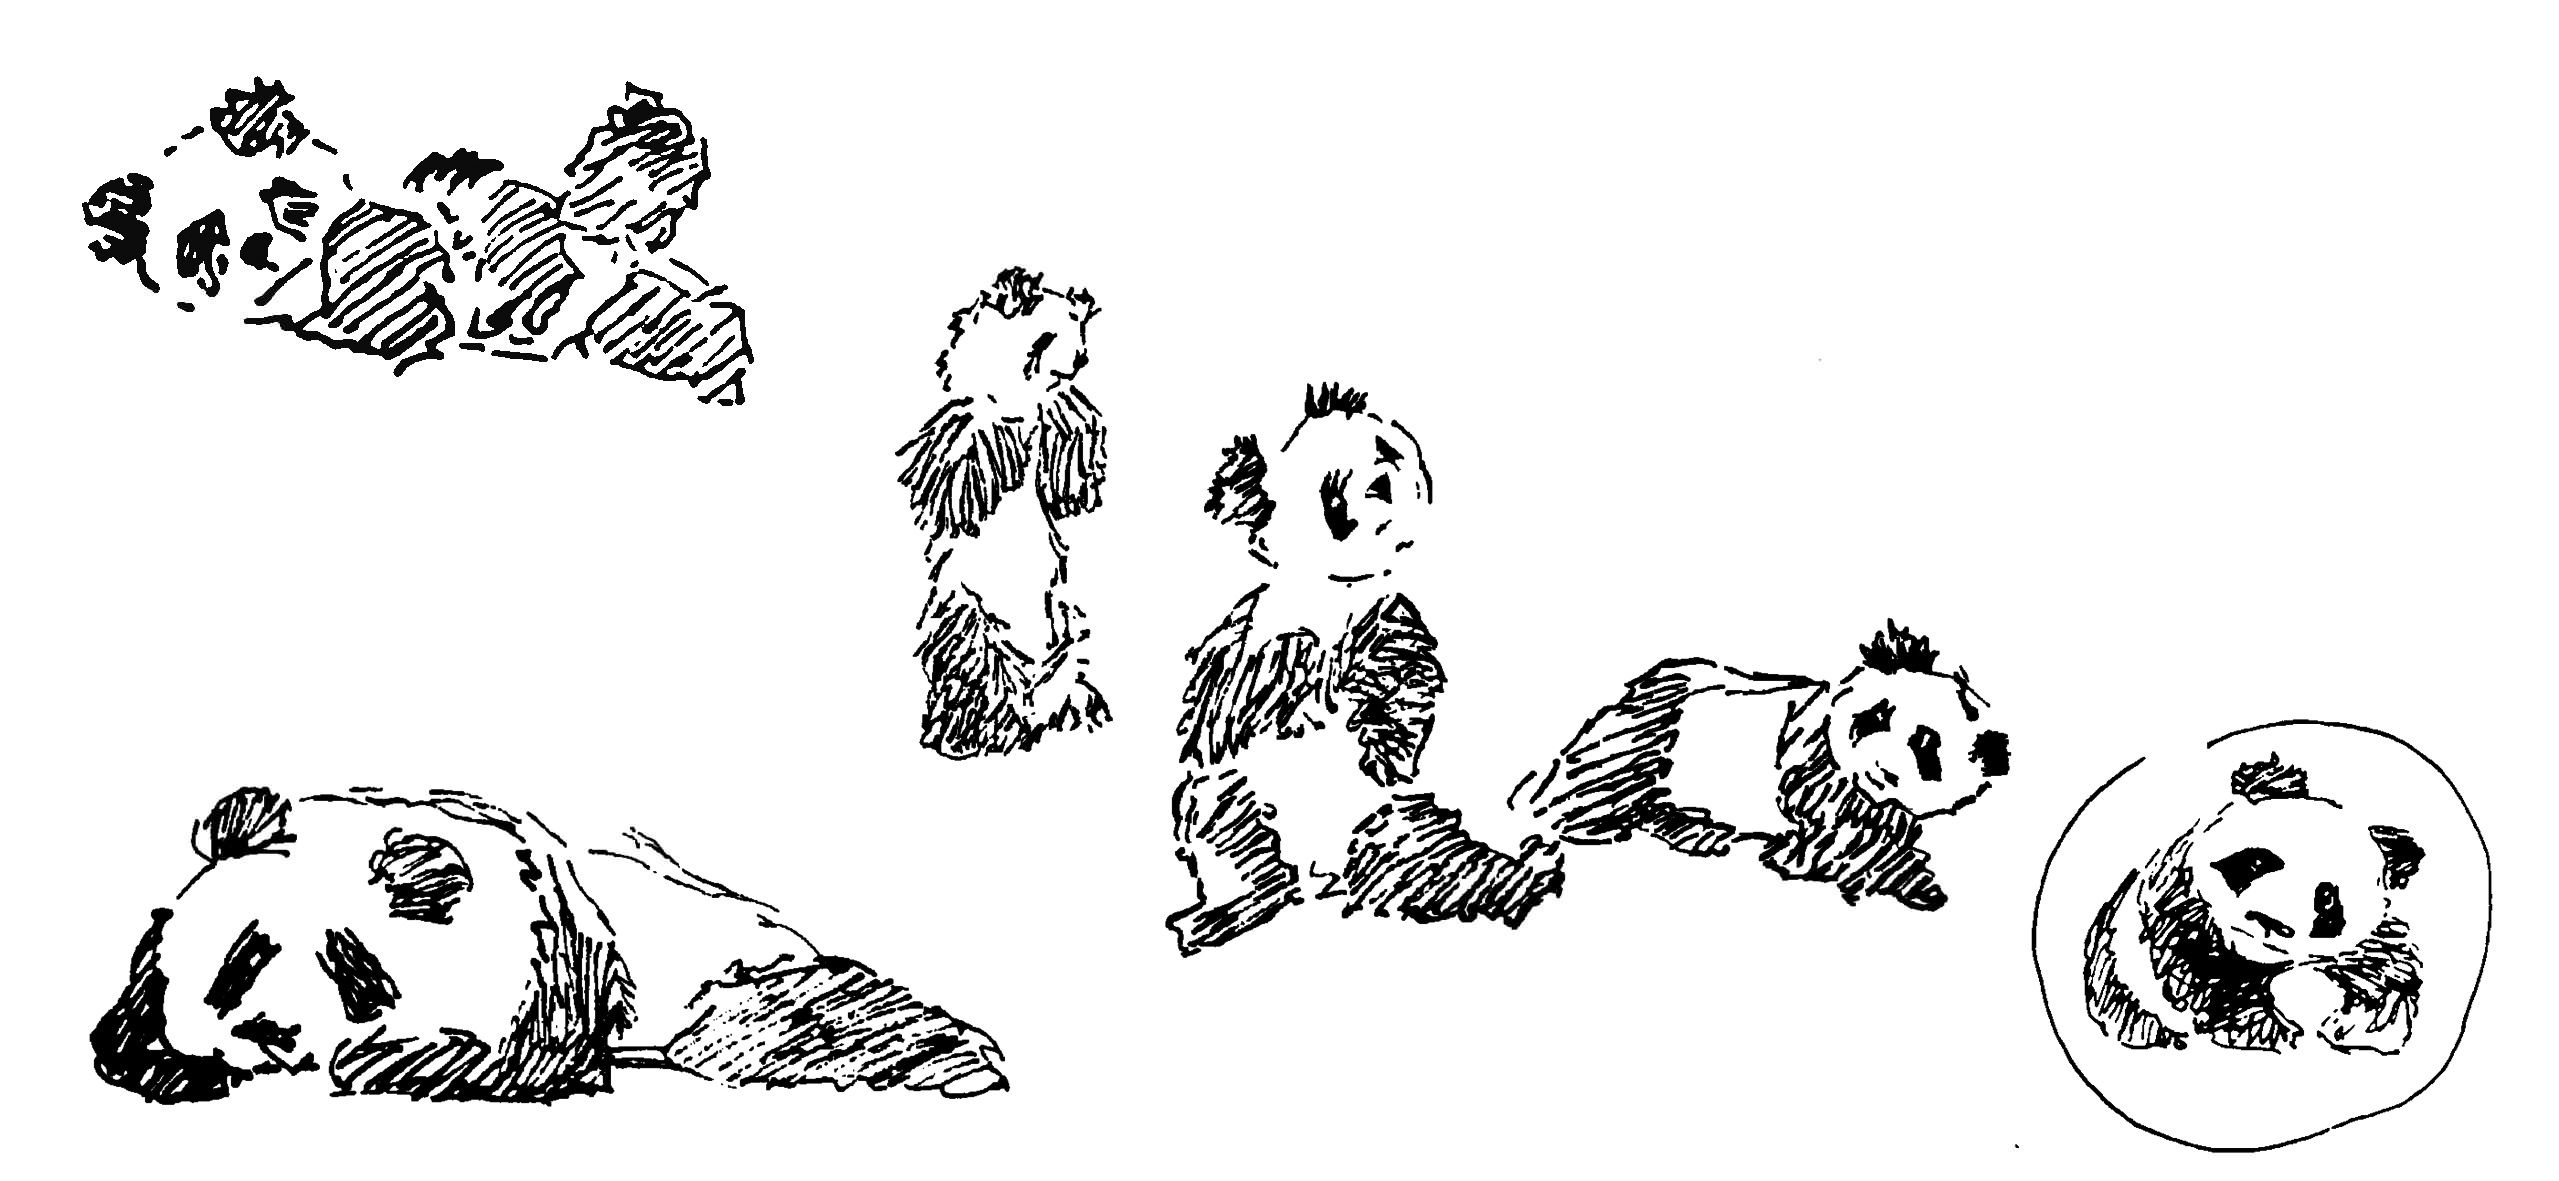 Bocetos del dibujo del panda